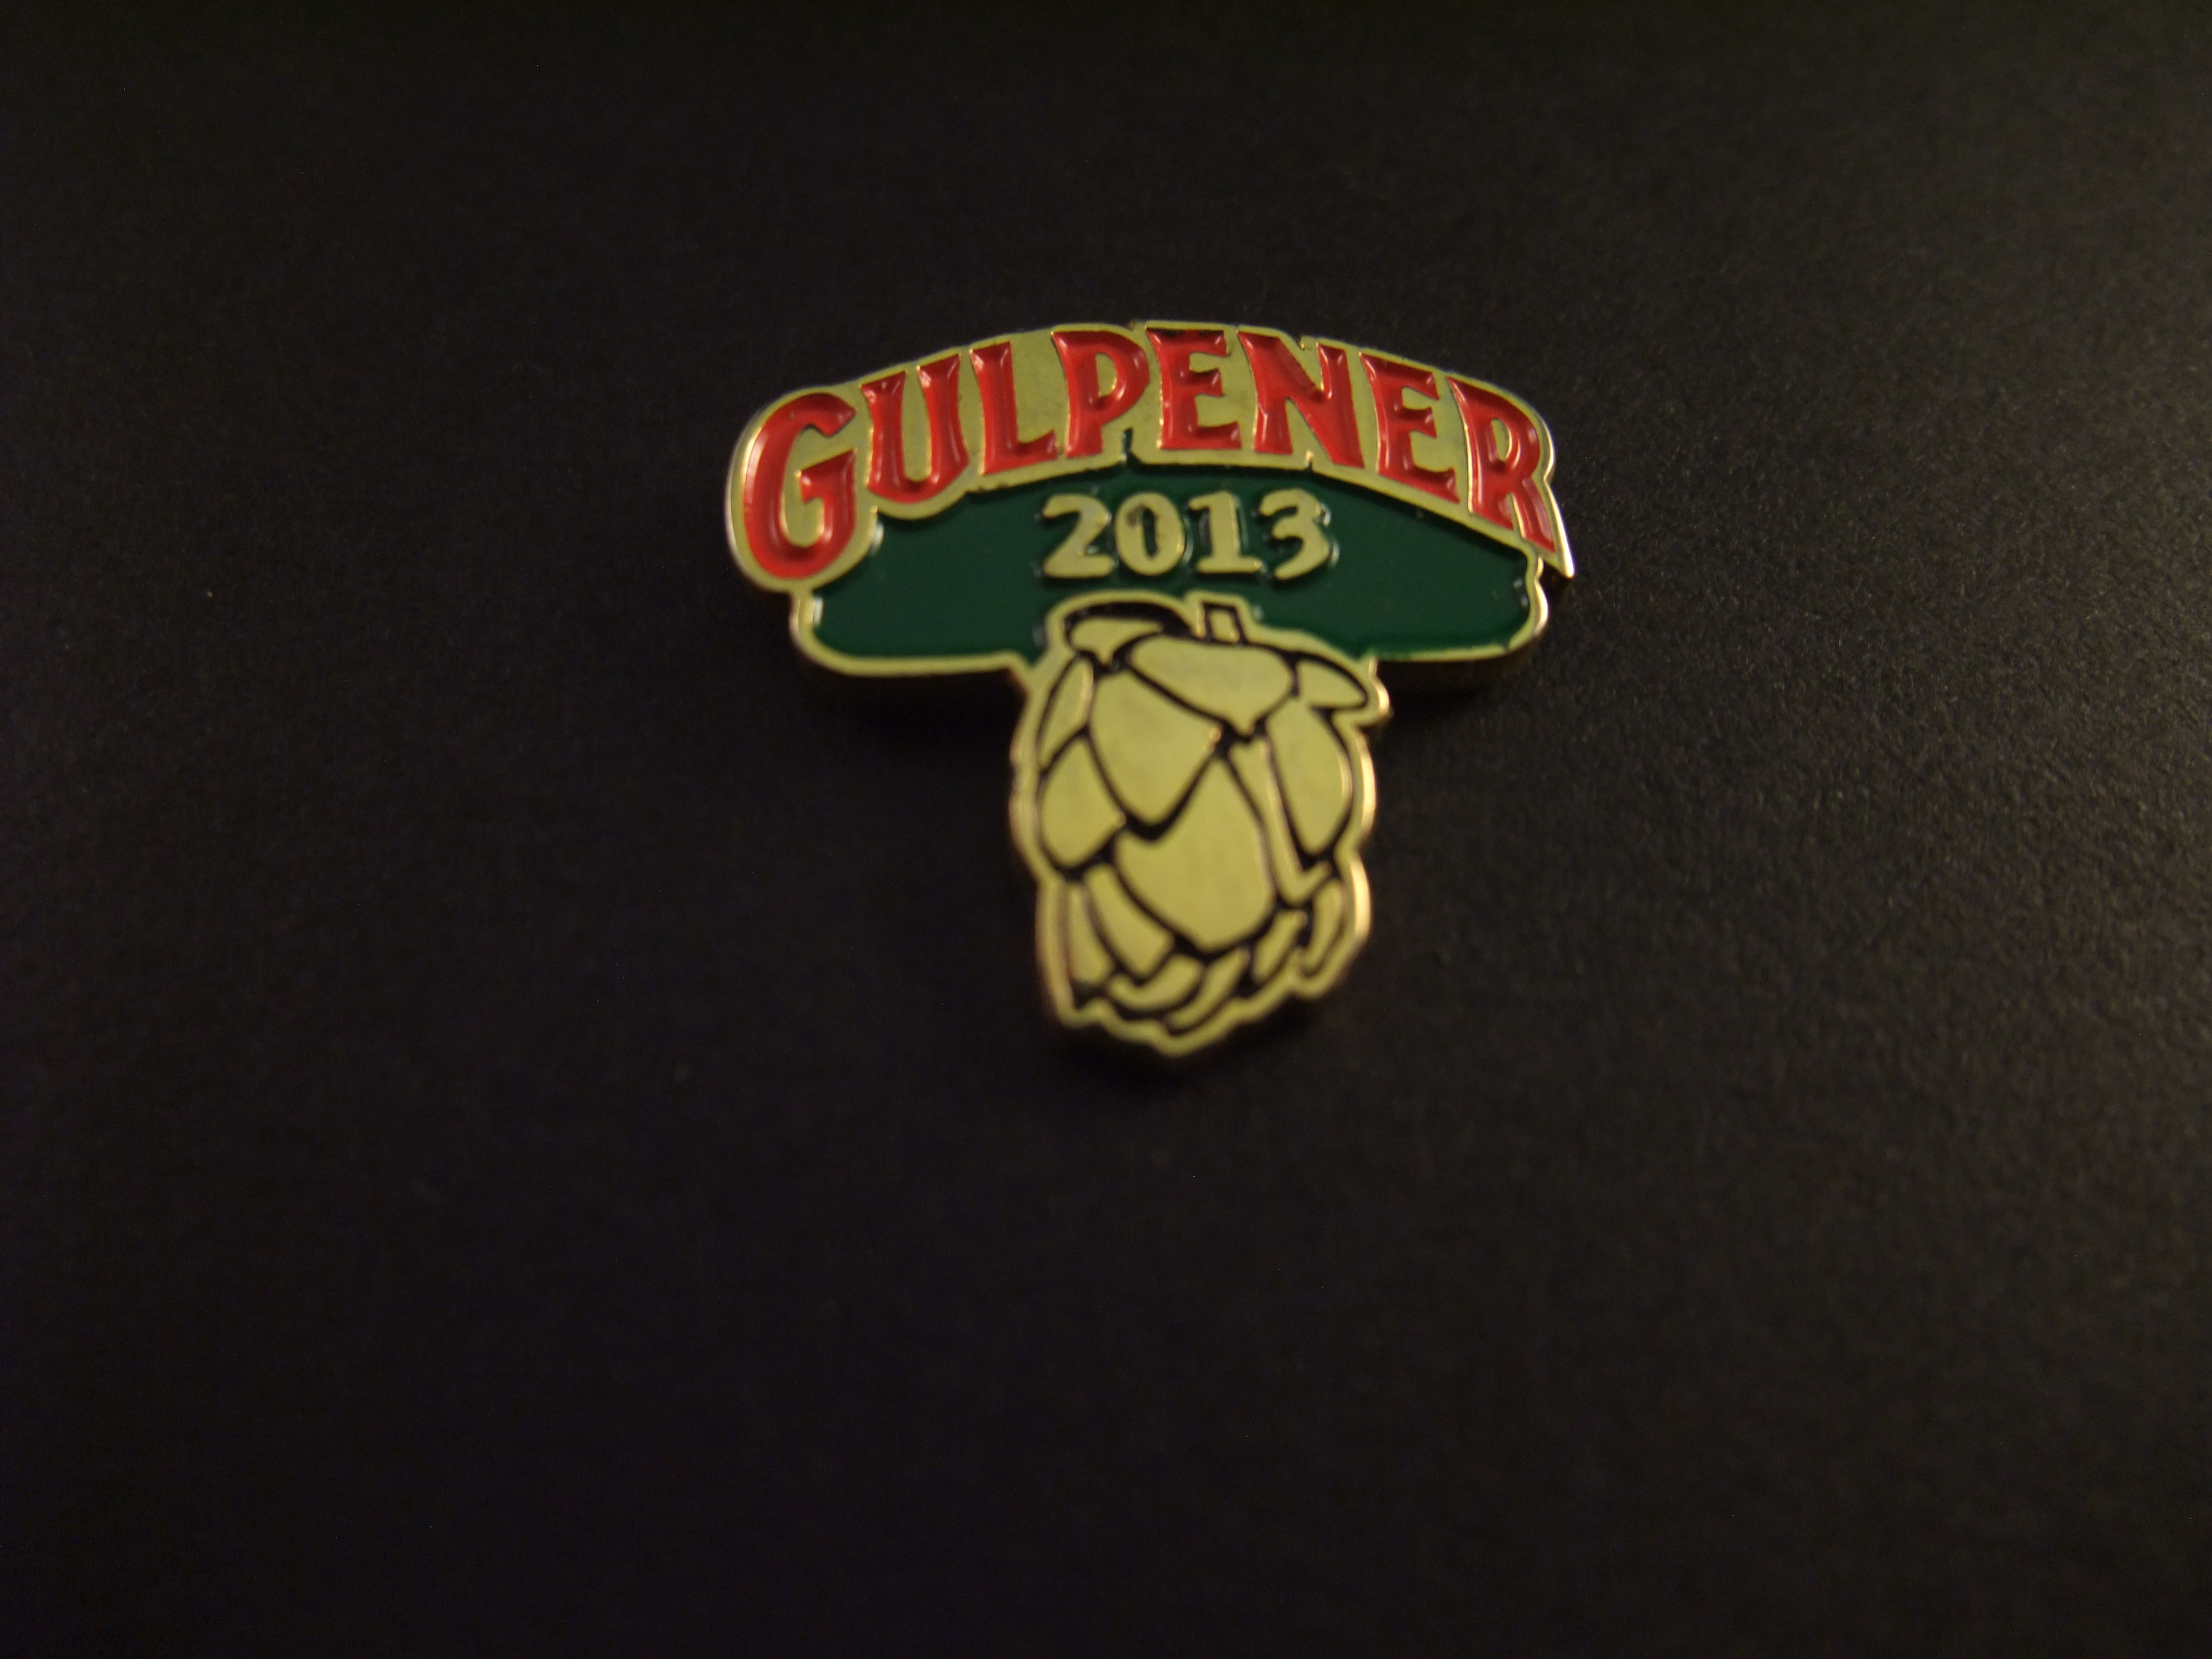 Gulpener bier 2013